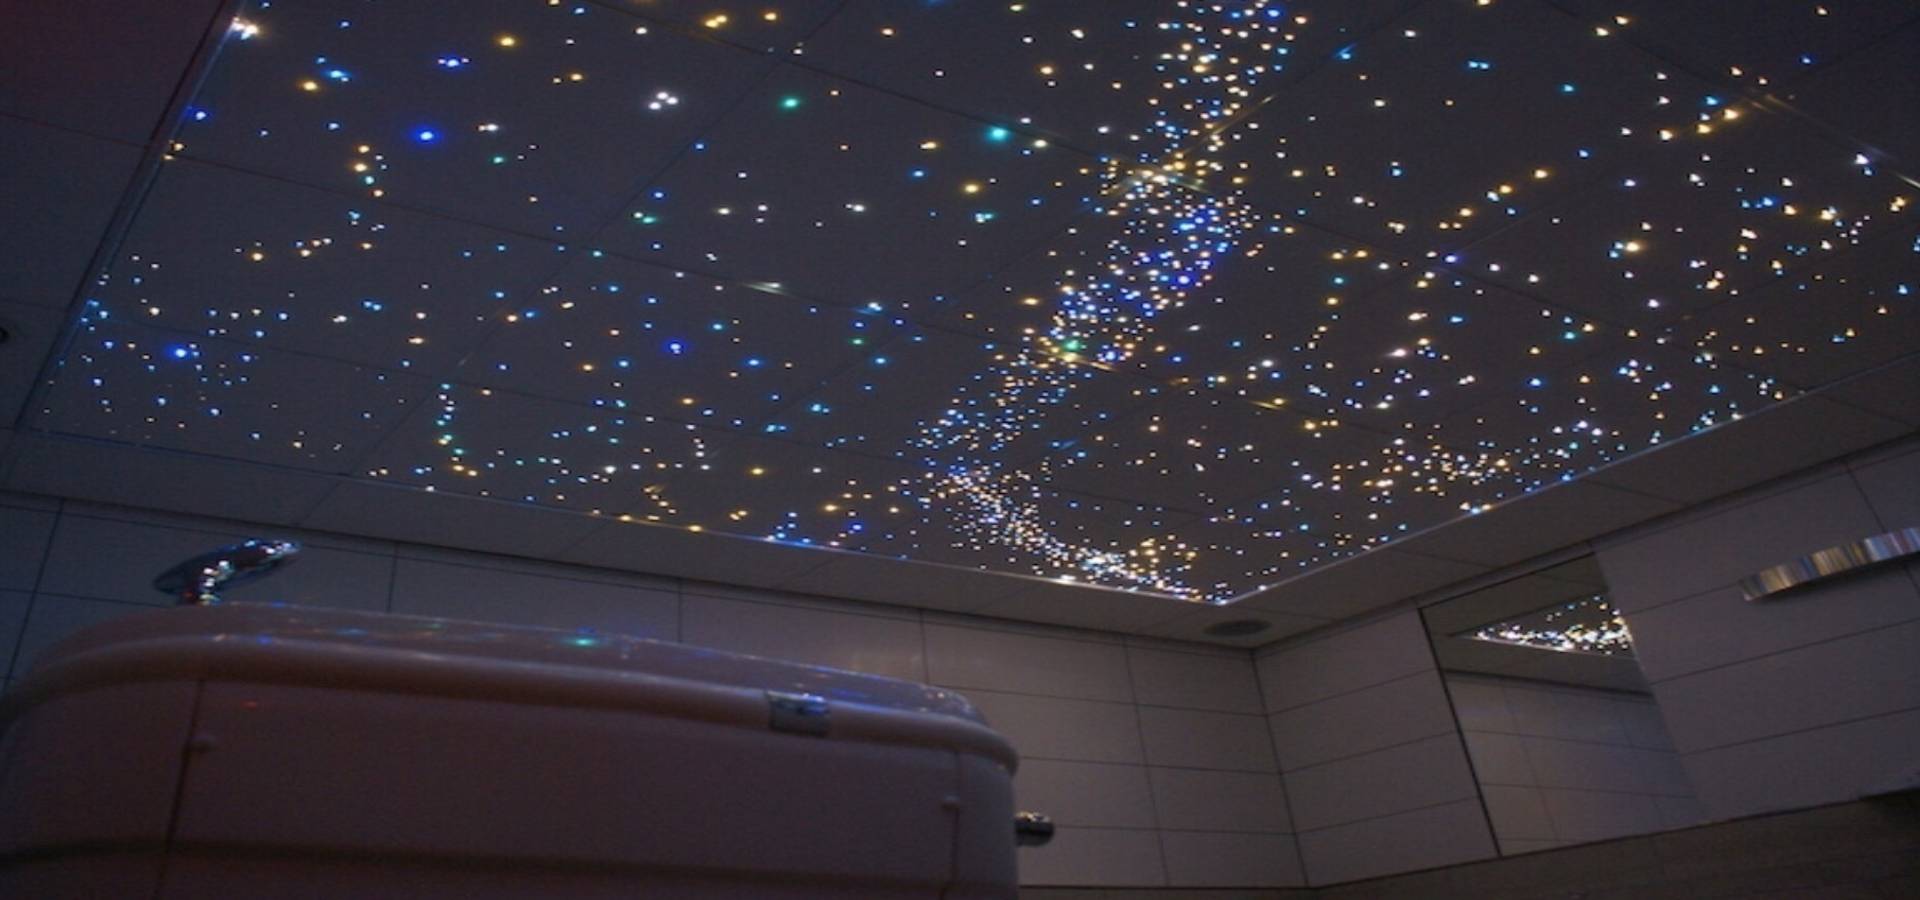 Spa Bathroom Ceiling Lights Star Lights For Bedroom Ceiling